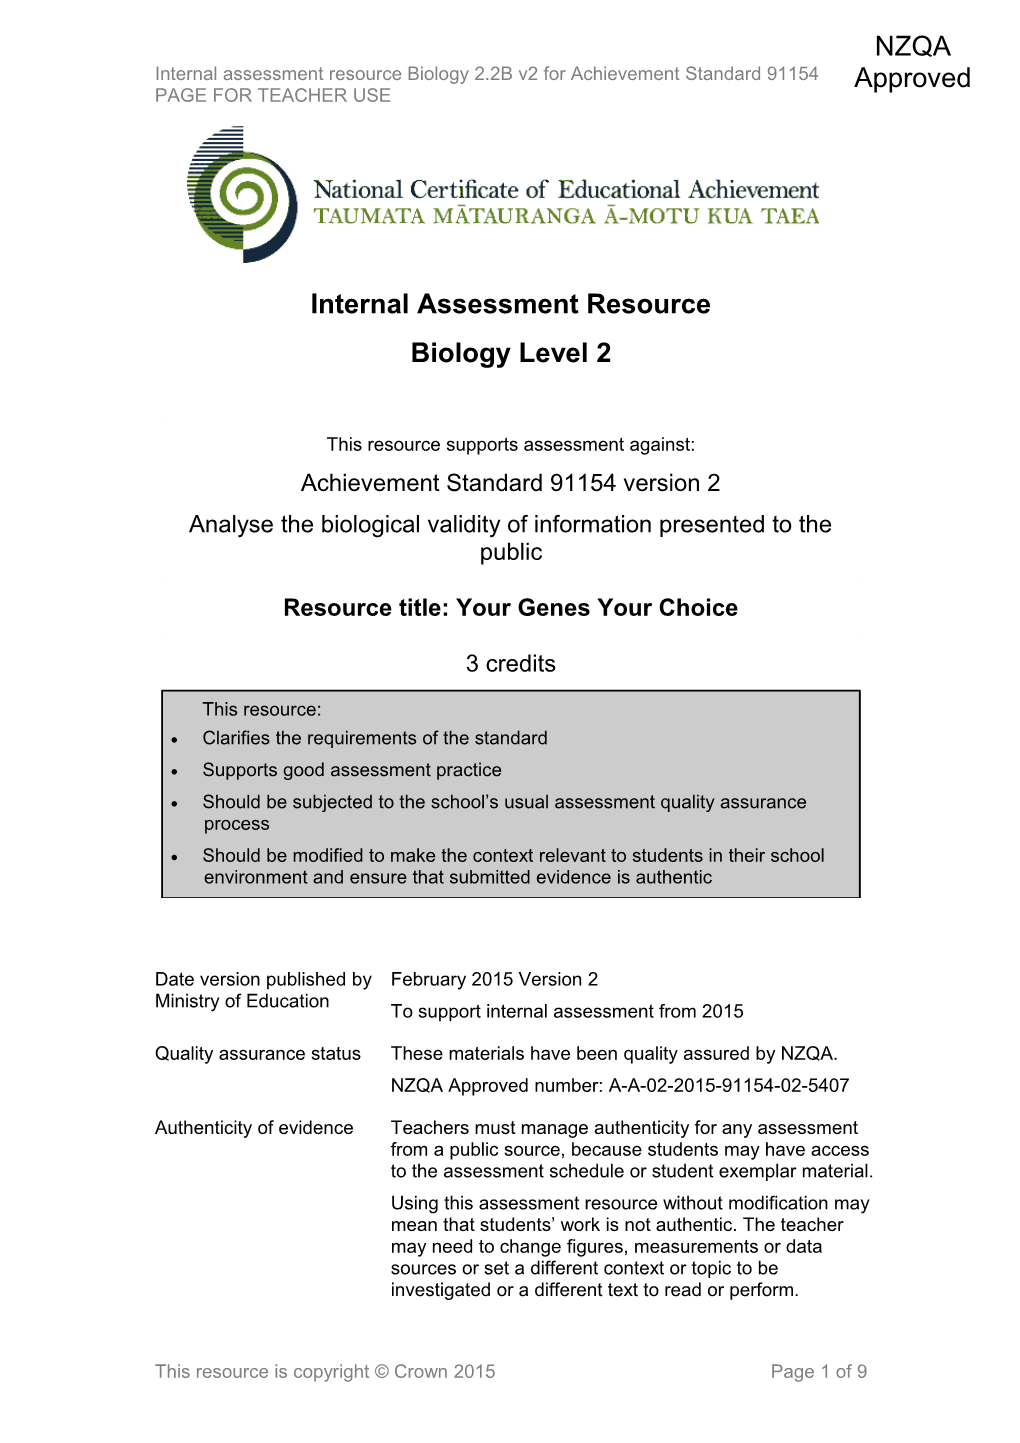 Level 2 Biology Internal Assessment Resource